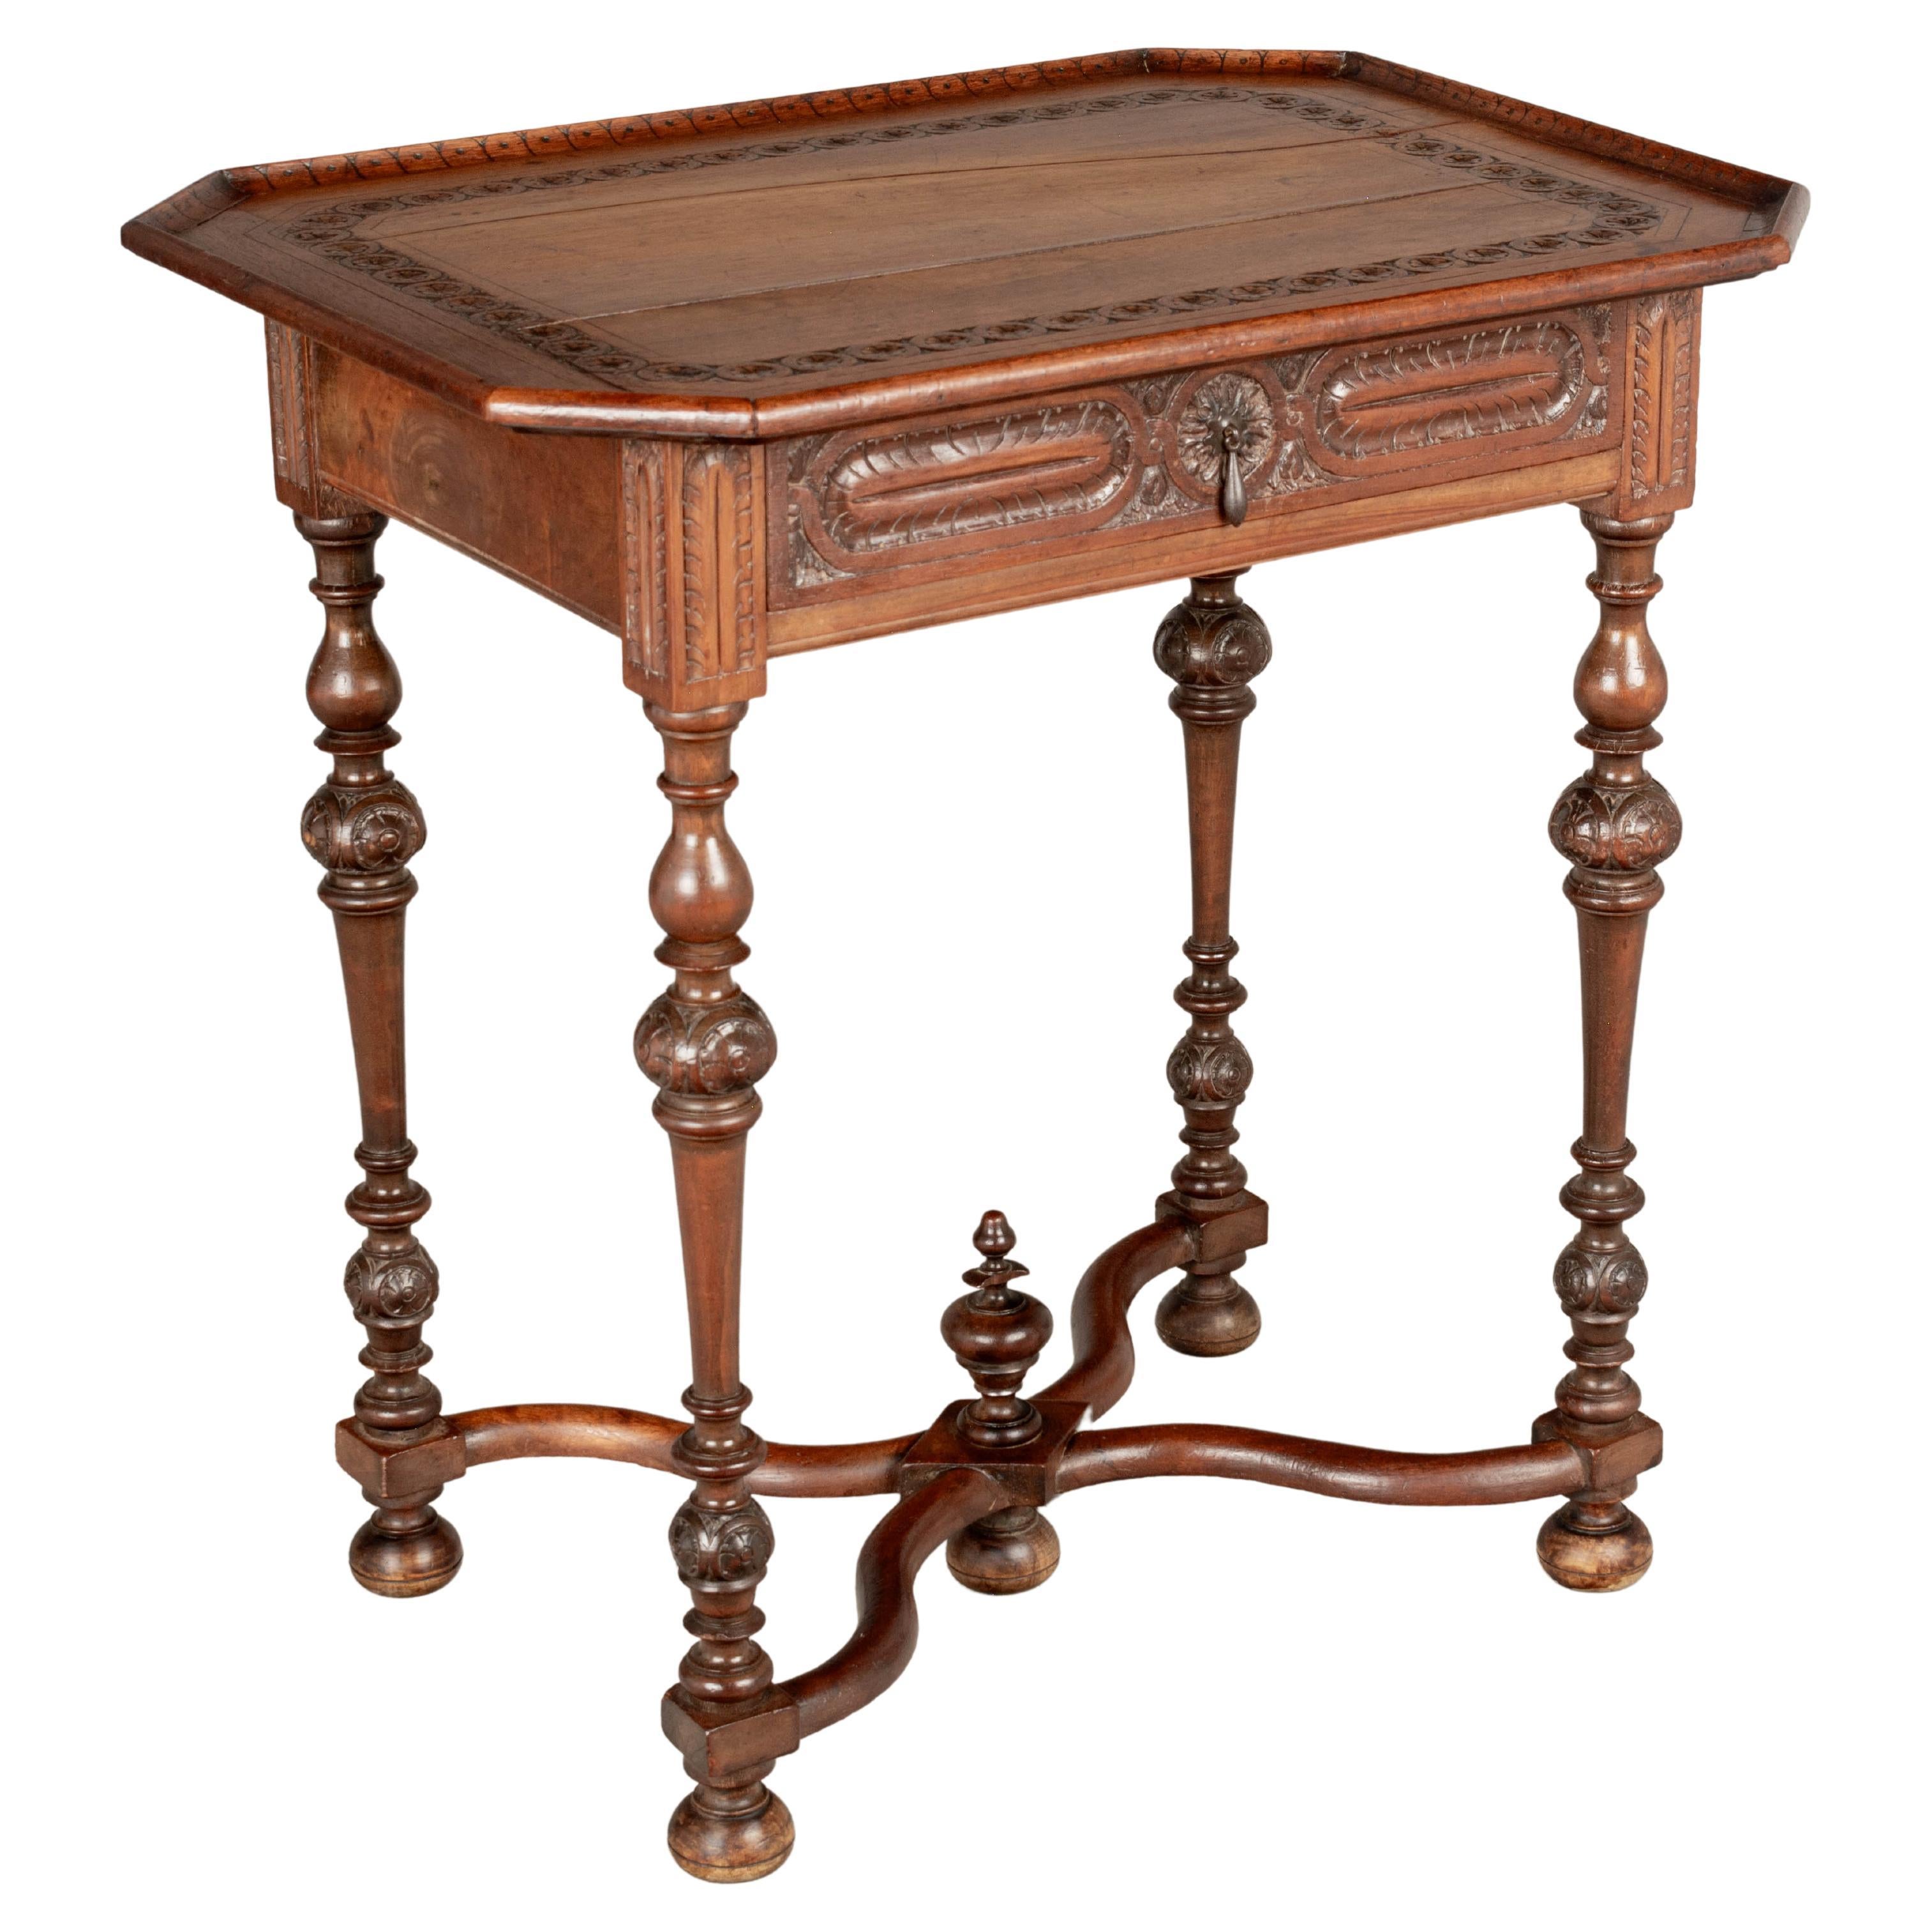 Table d'appoint en noyer de style Louis XIII